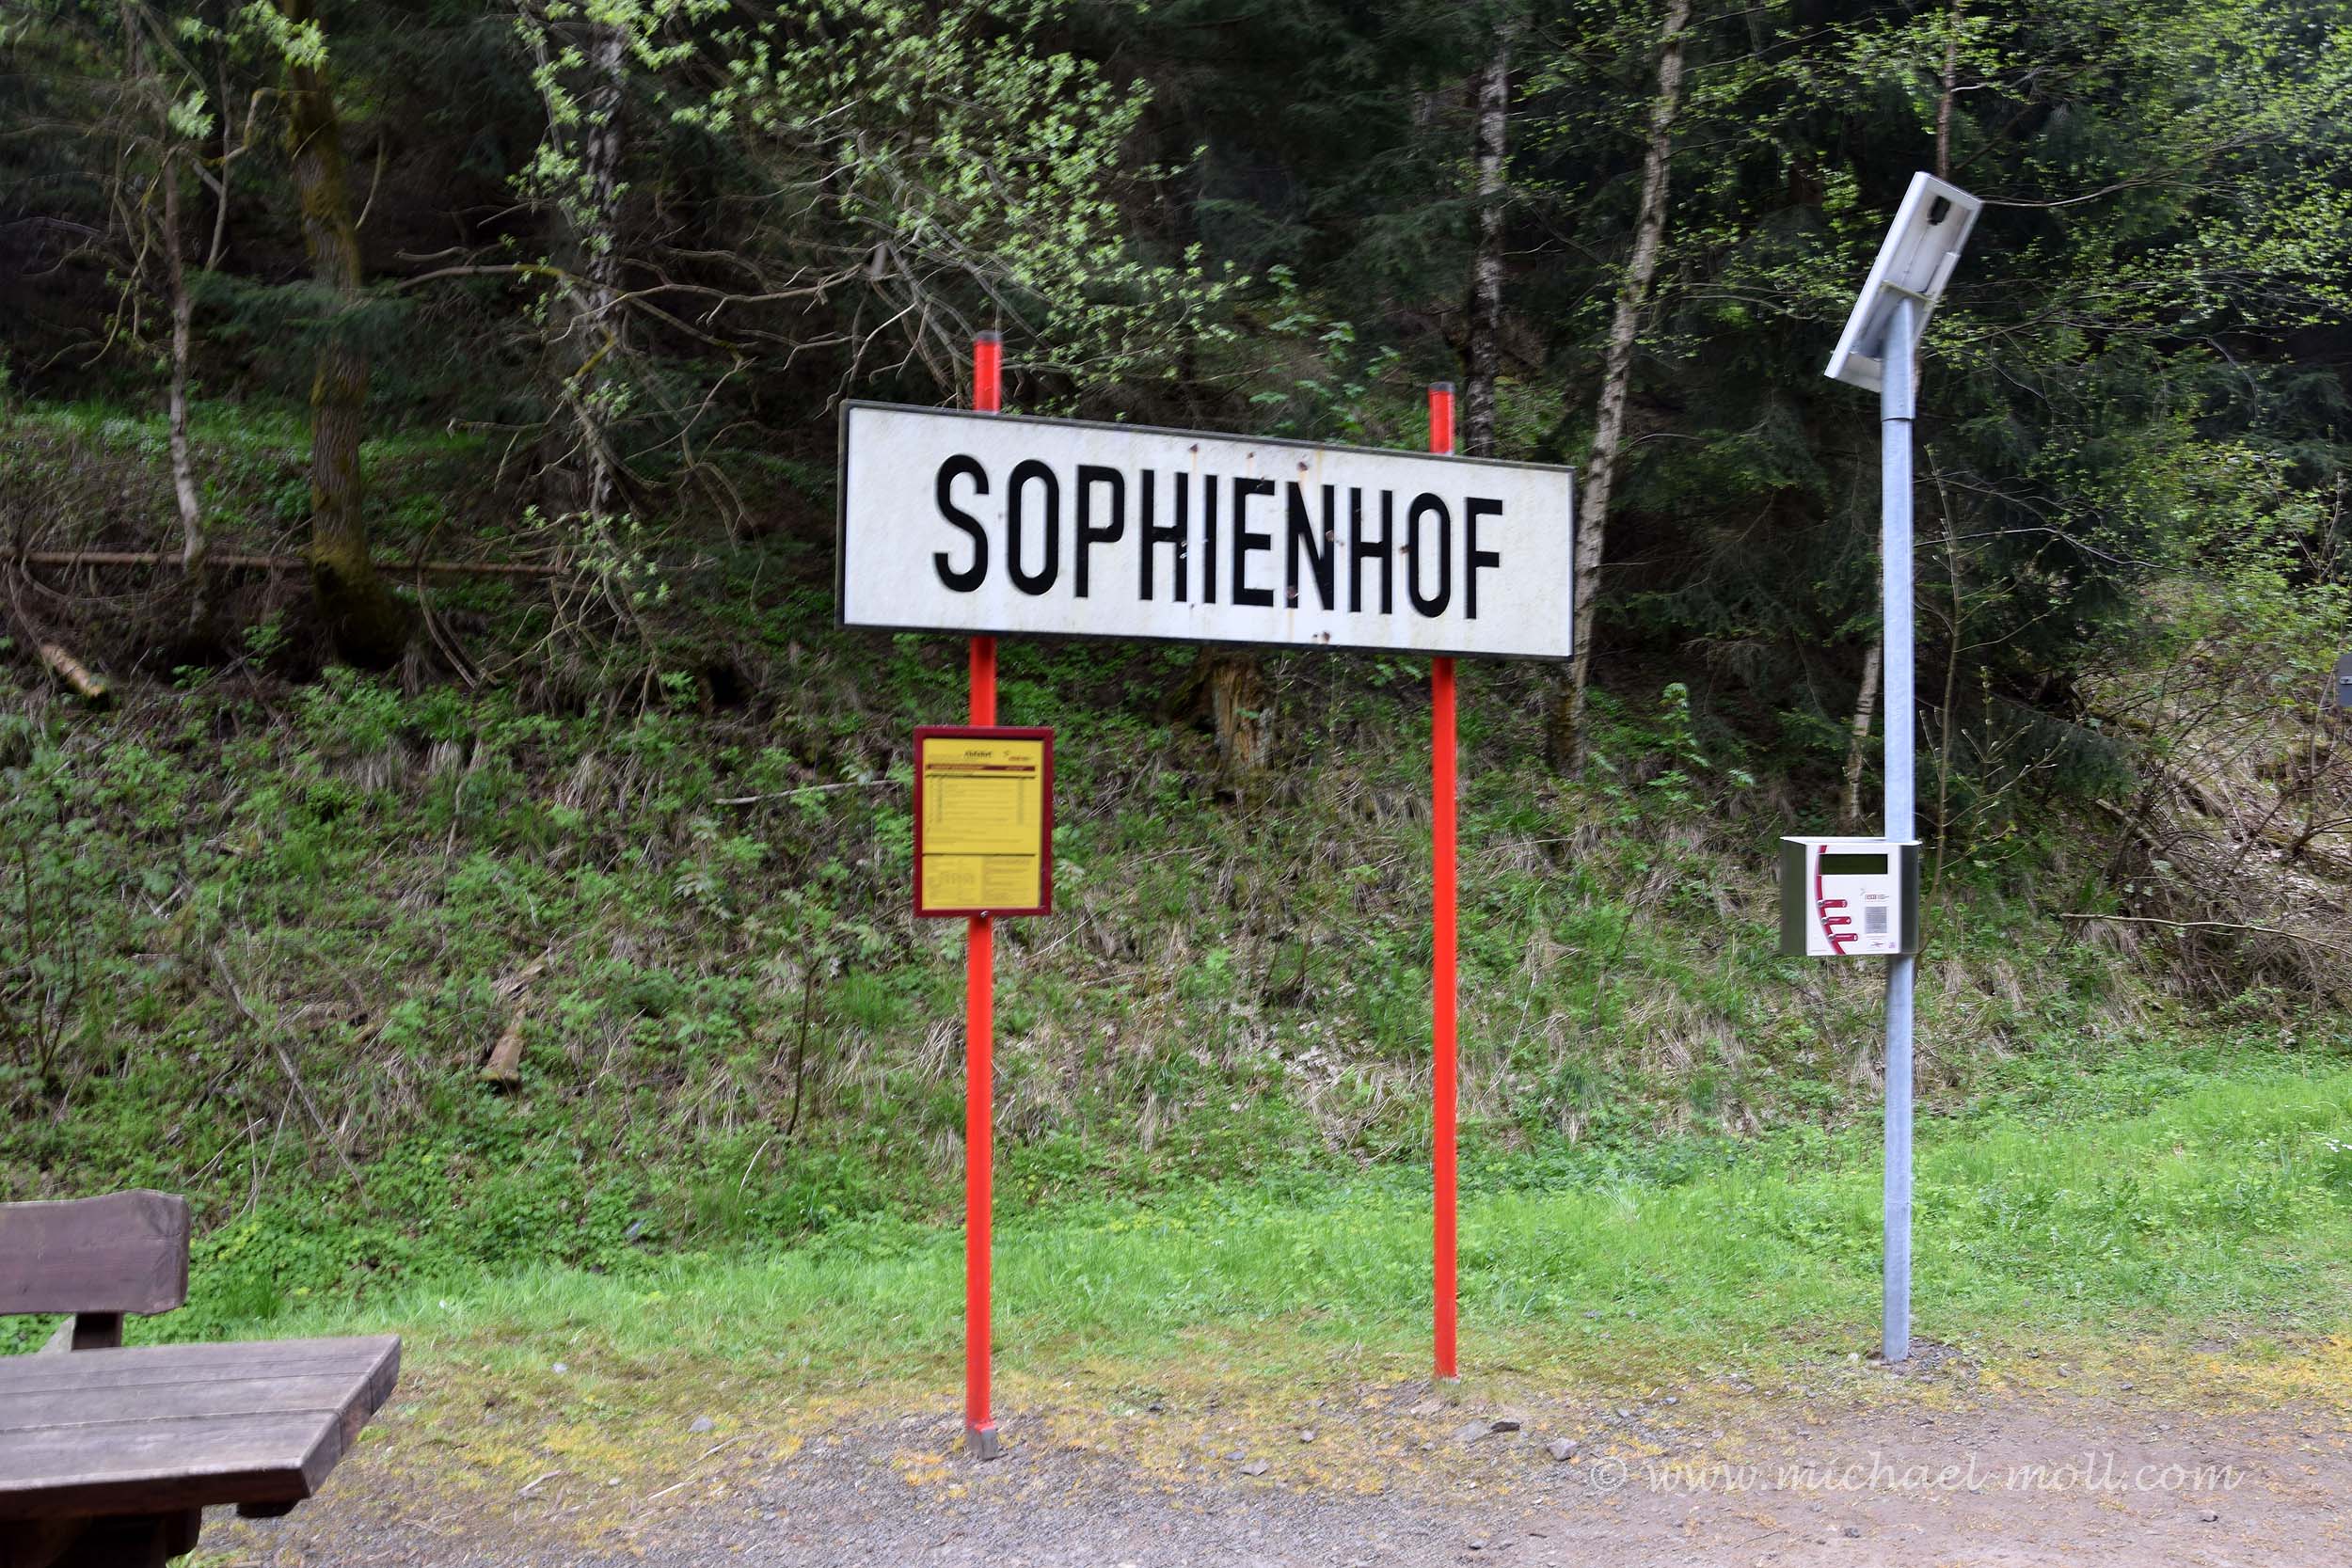 Sophienhof